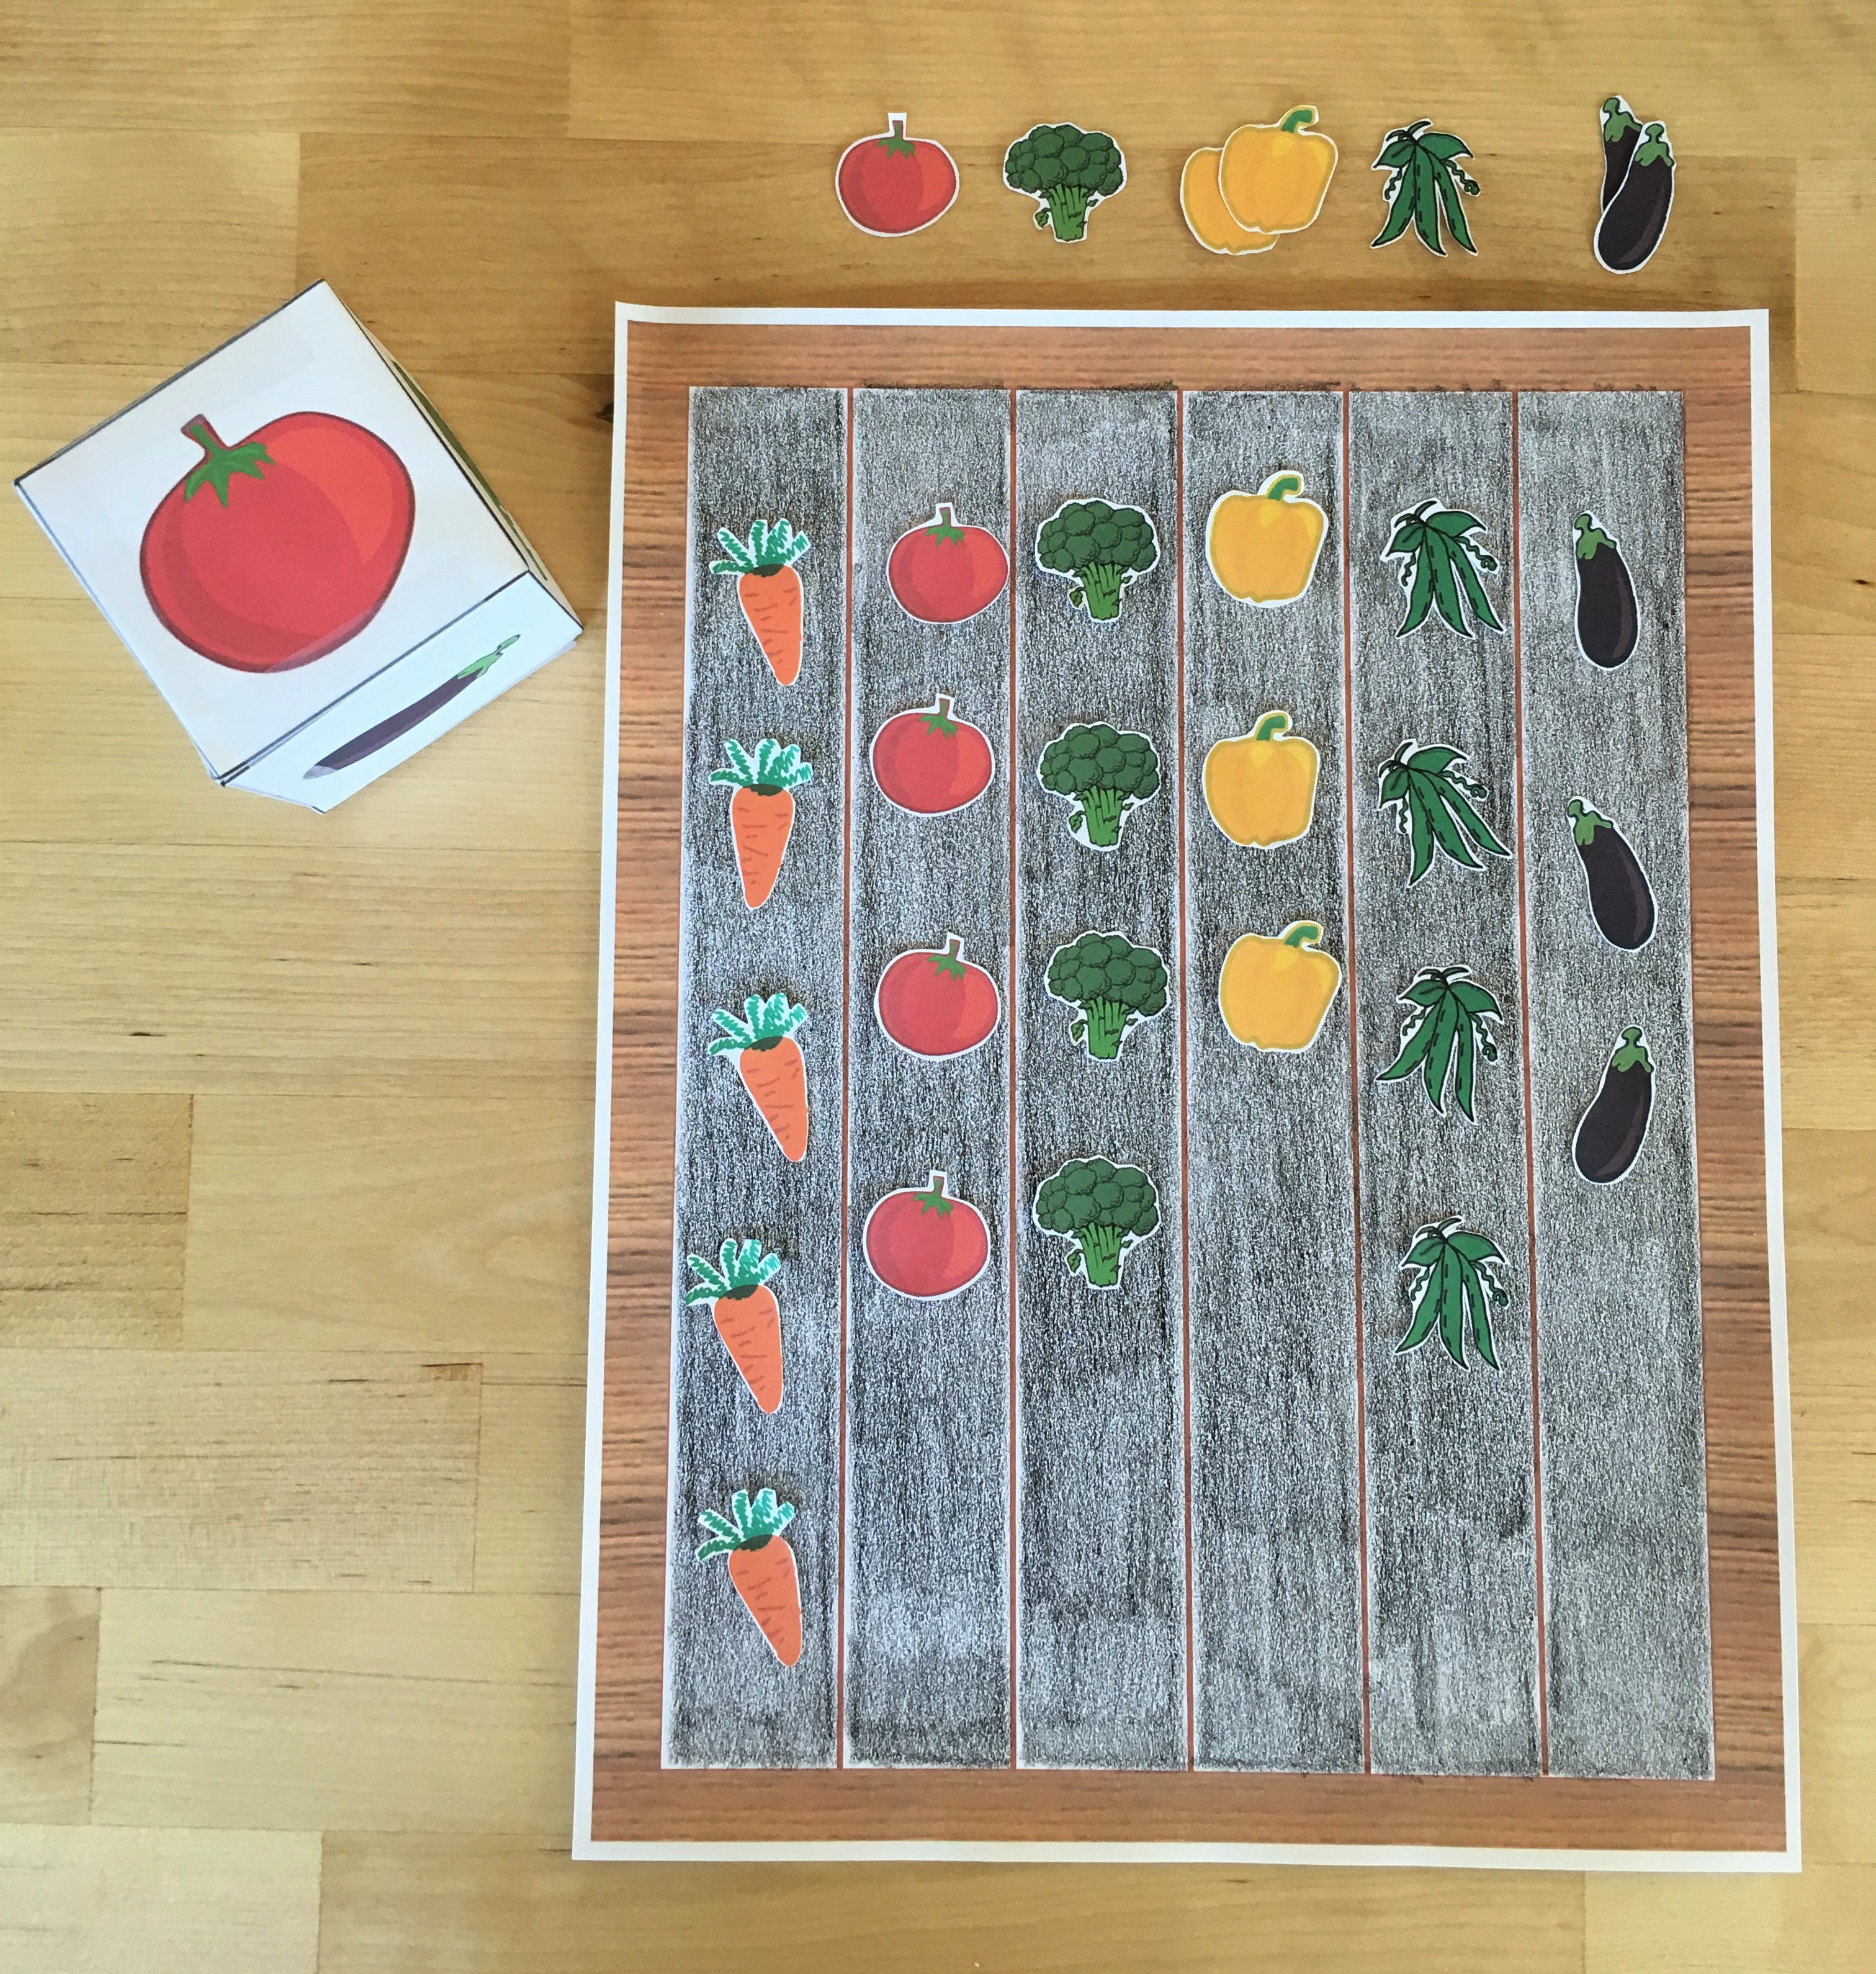 celebrate-picture-books-picture-book-review-garden-board-game